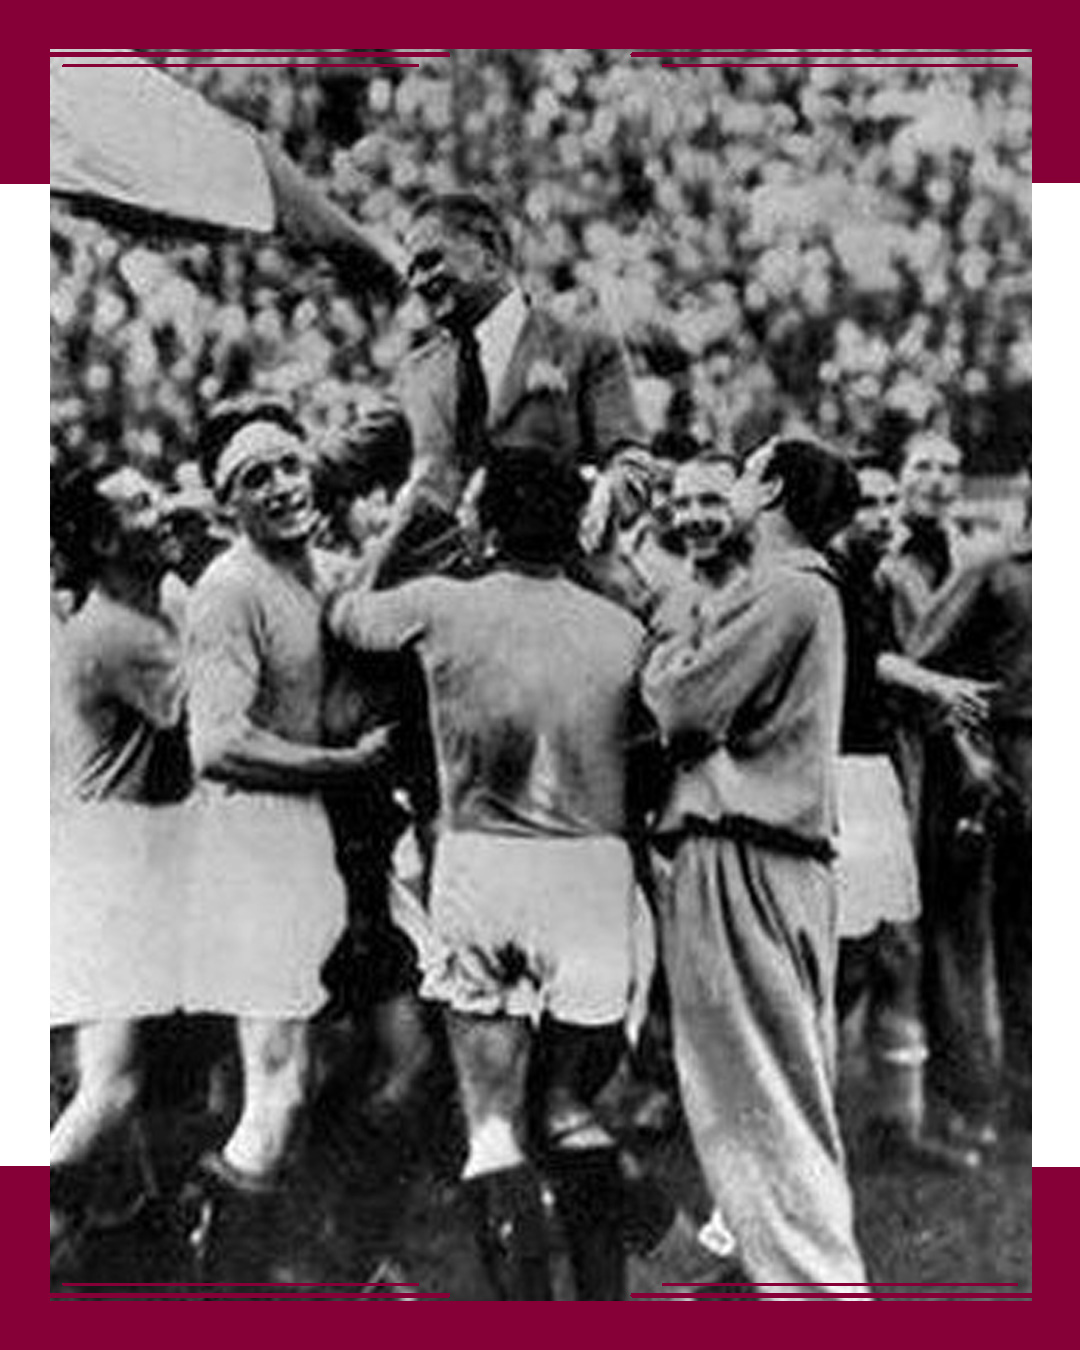 Italia, Campeona en el 1934